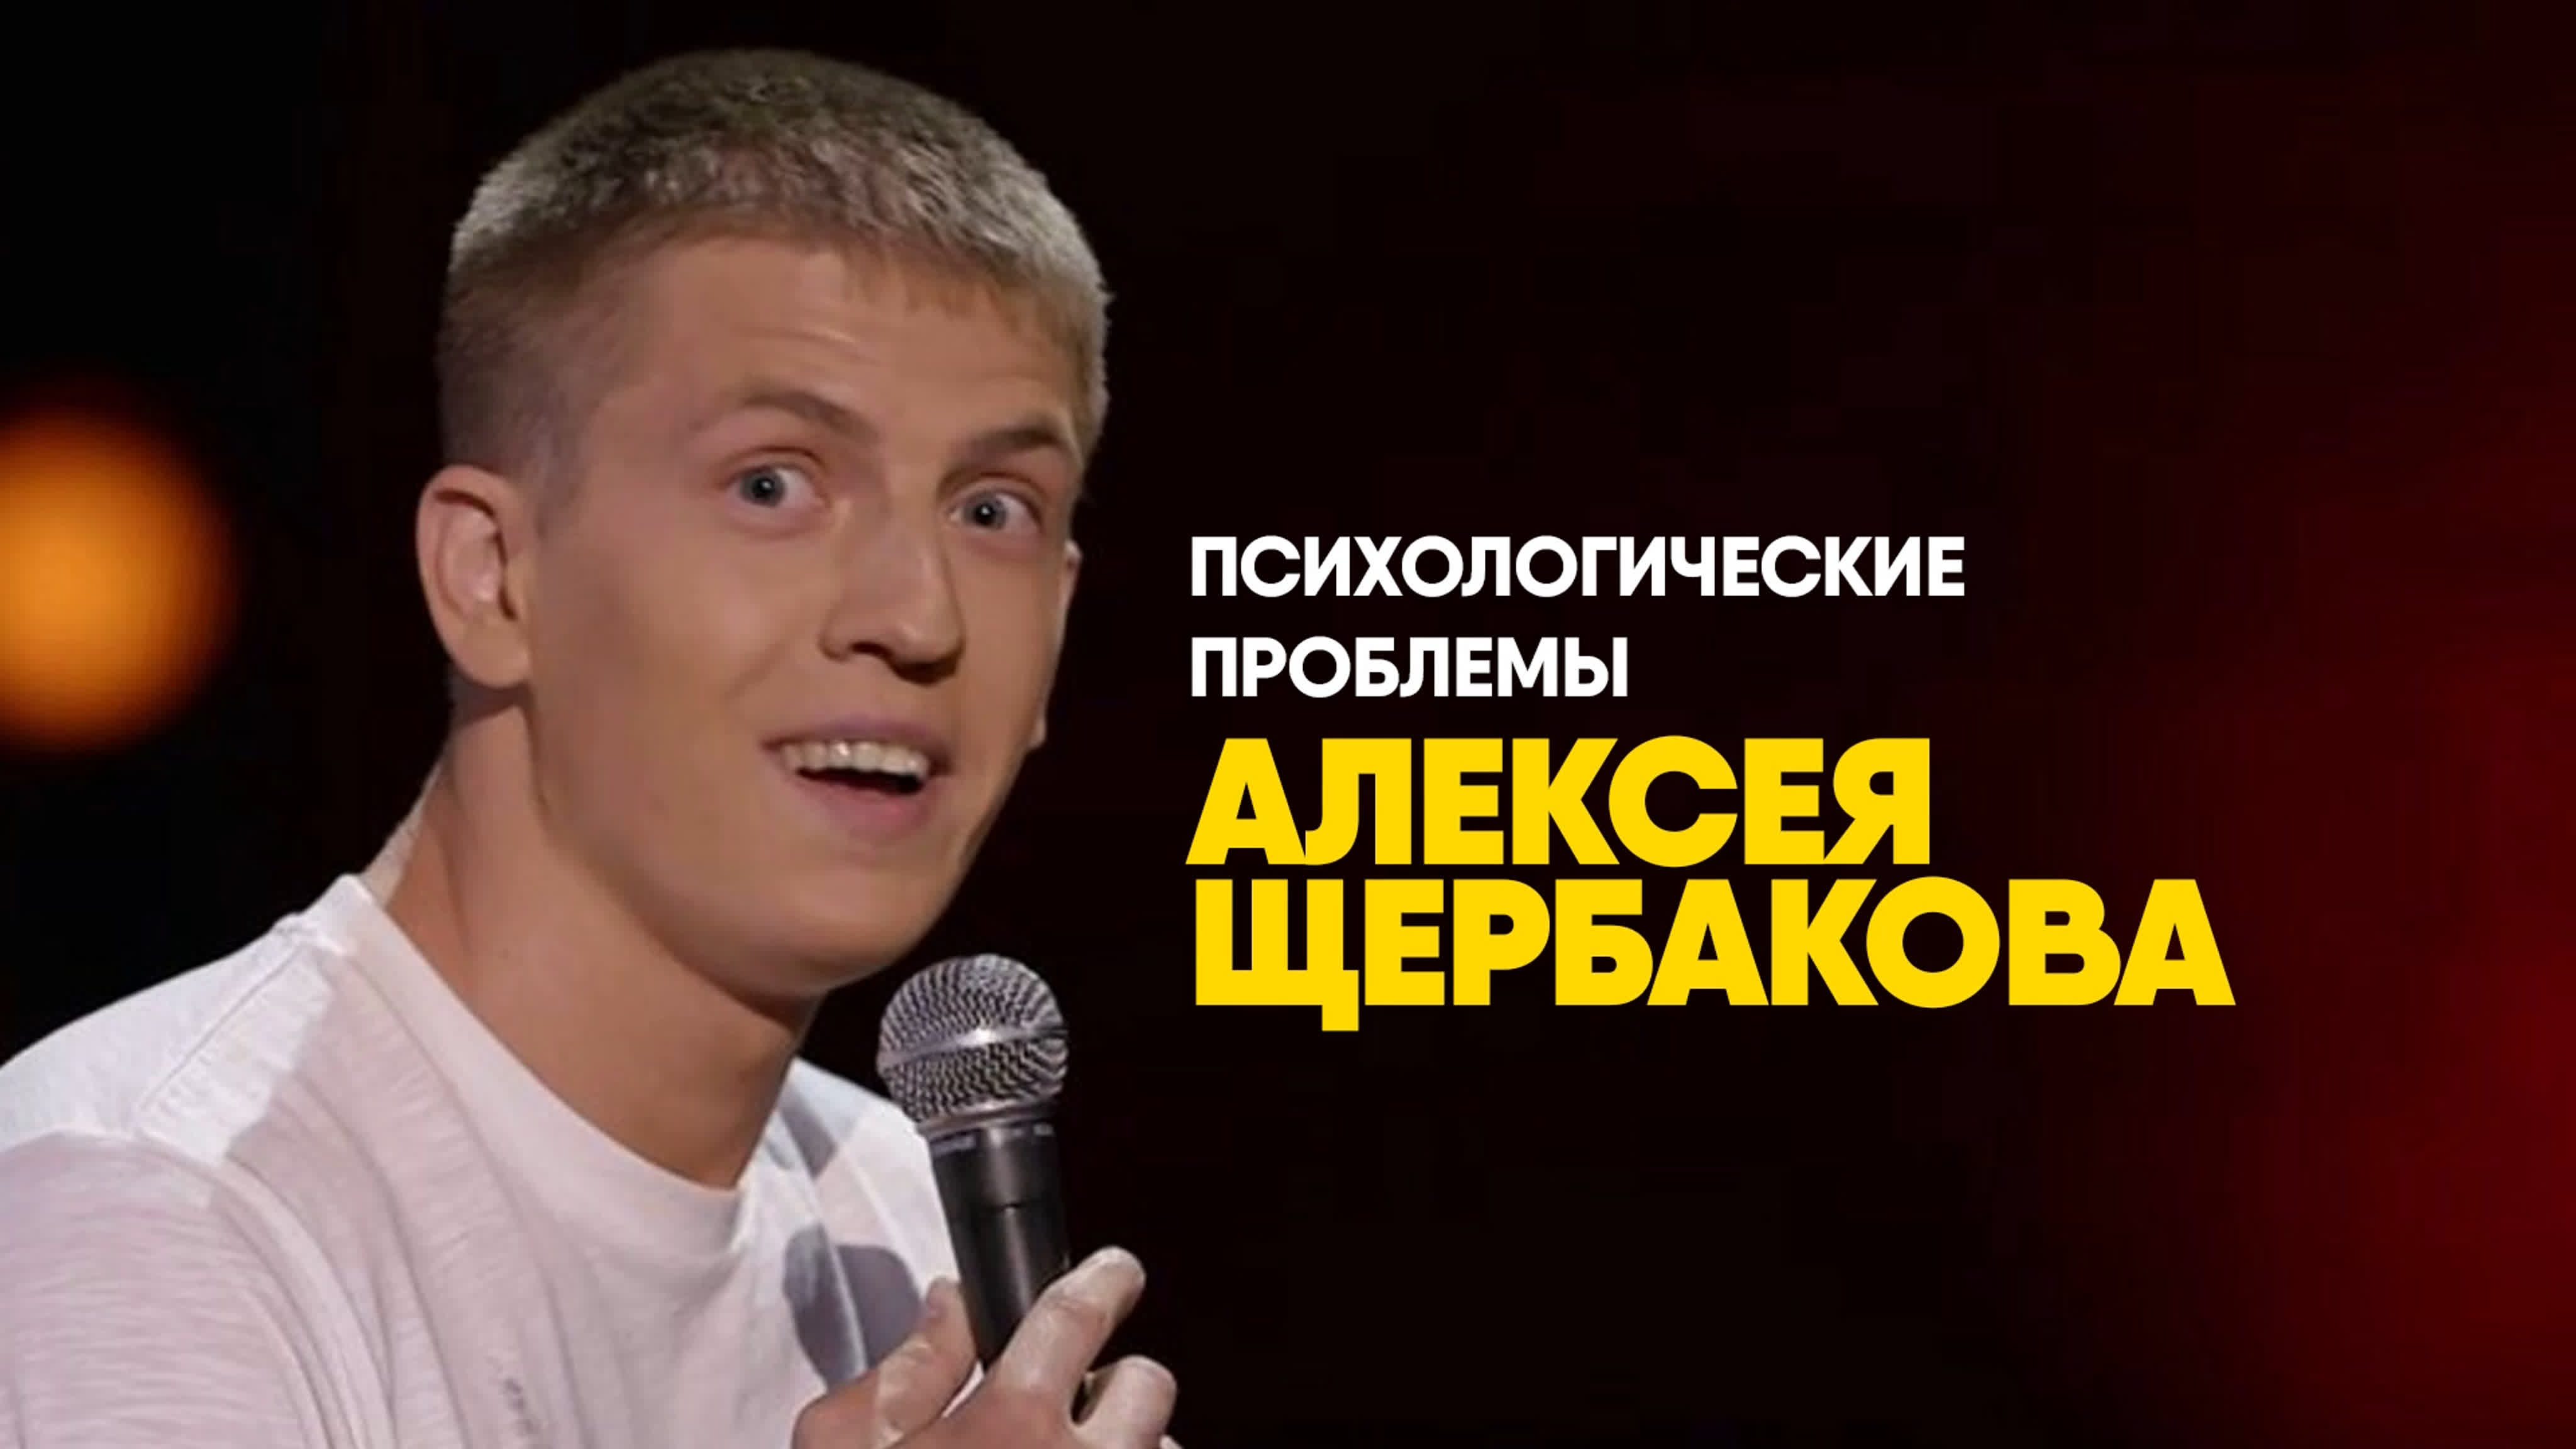 Реклама Алексея Щербакова